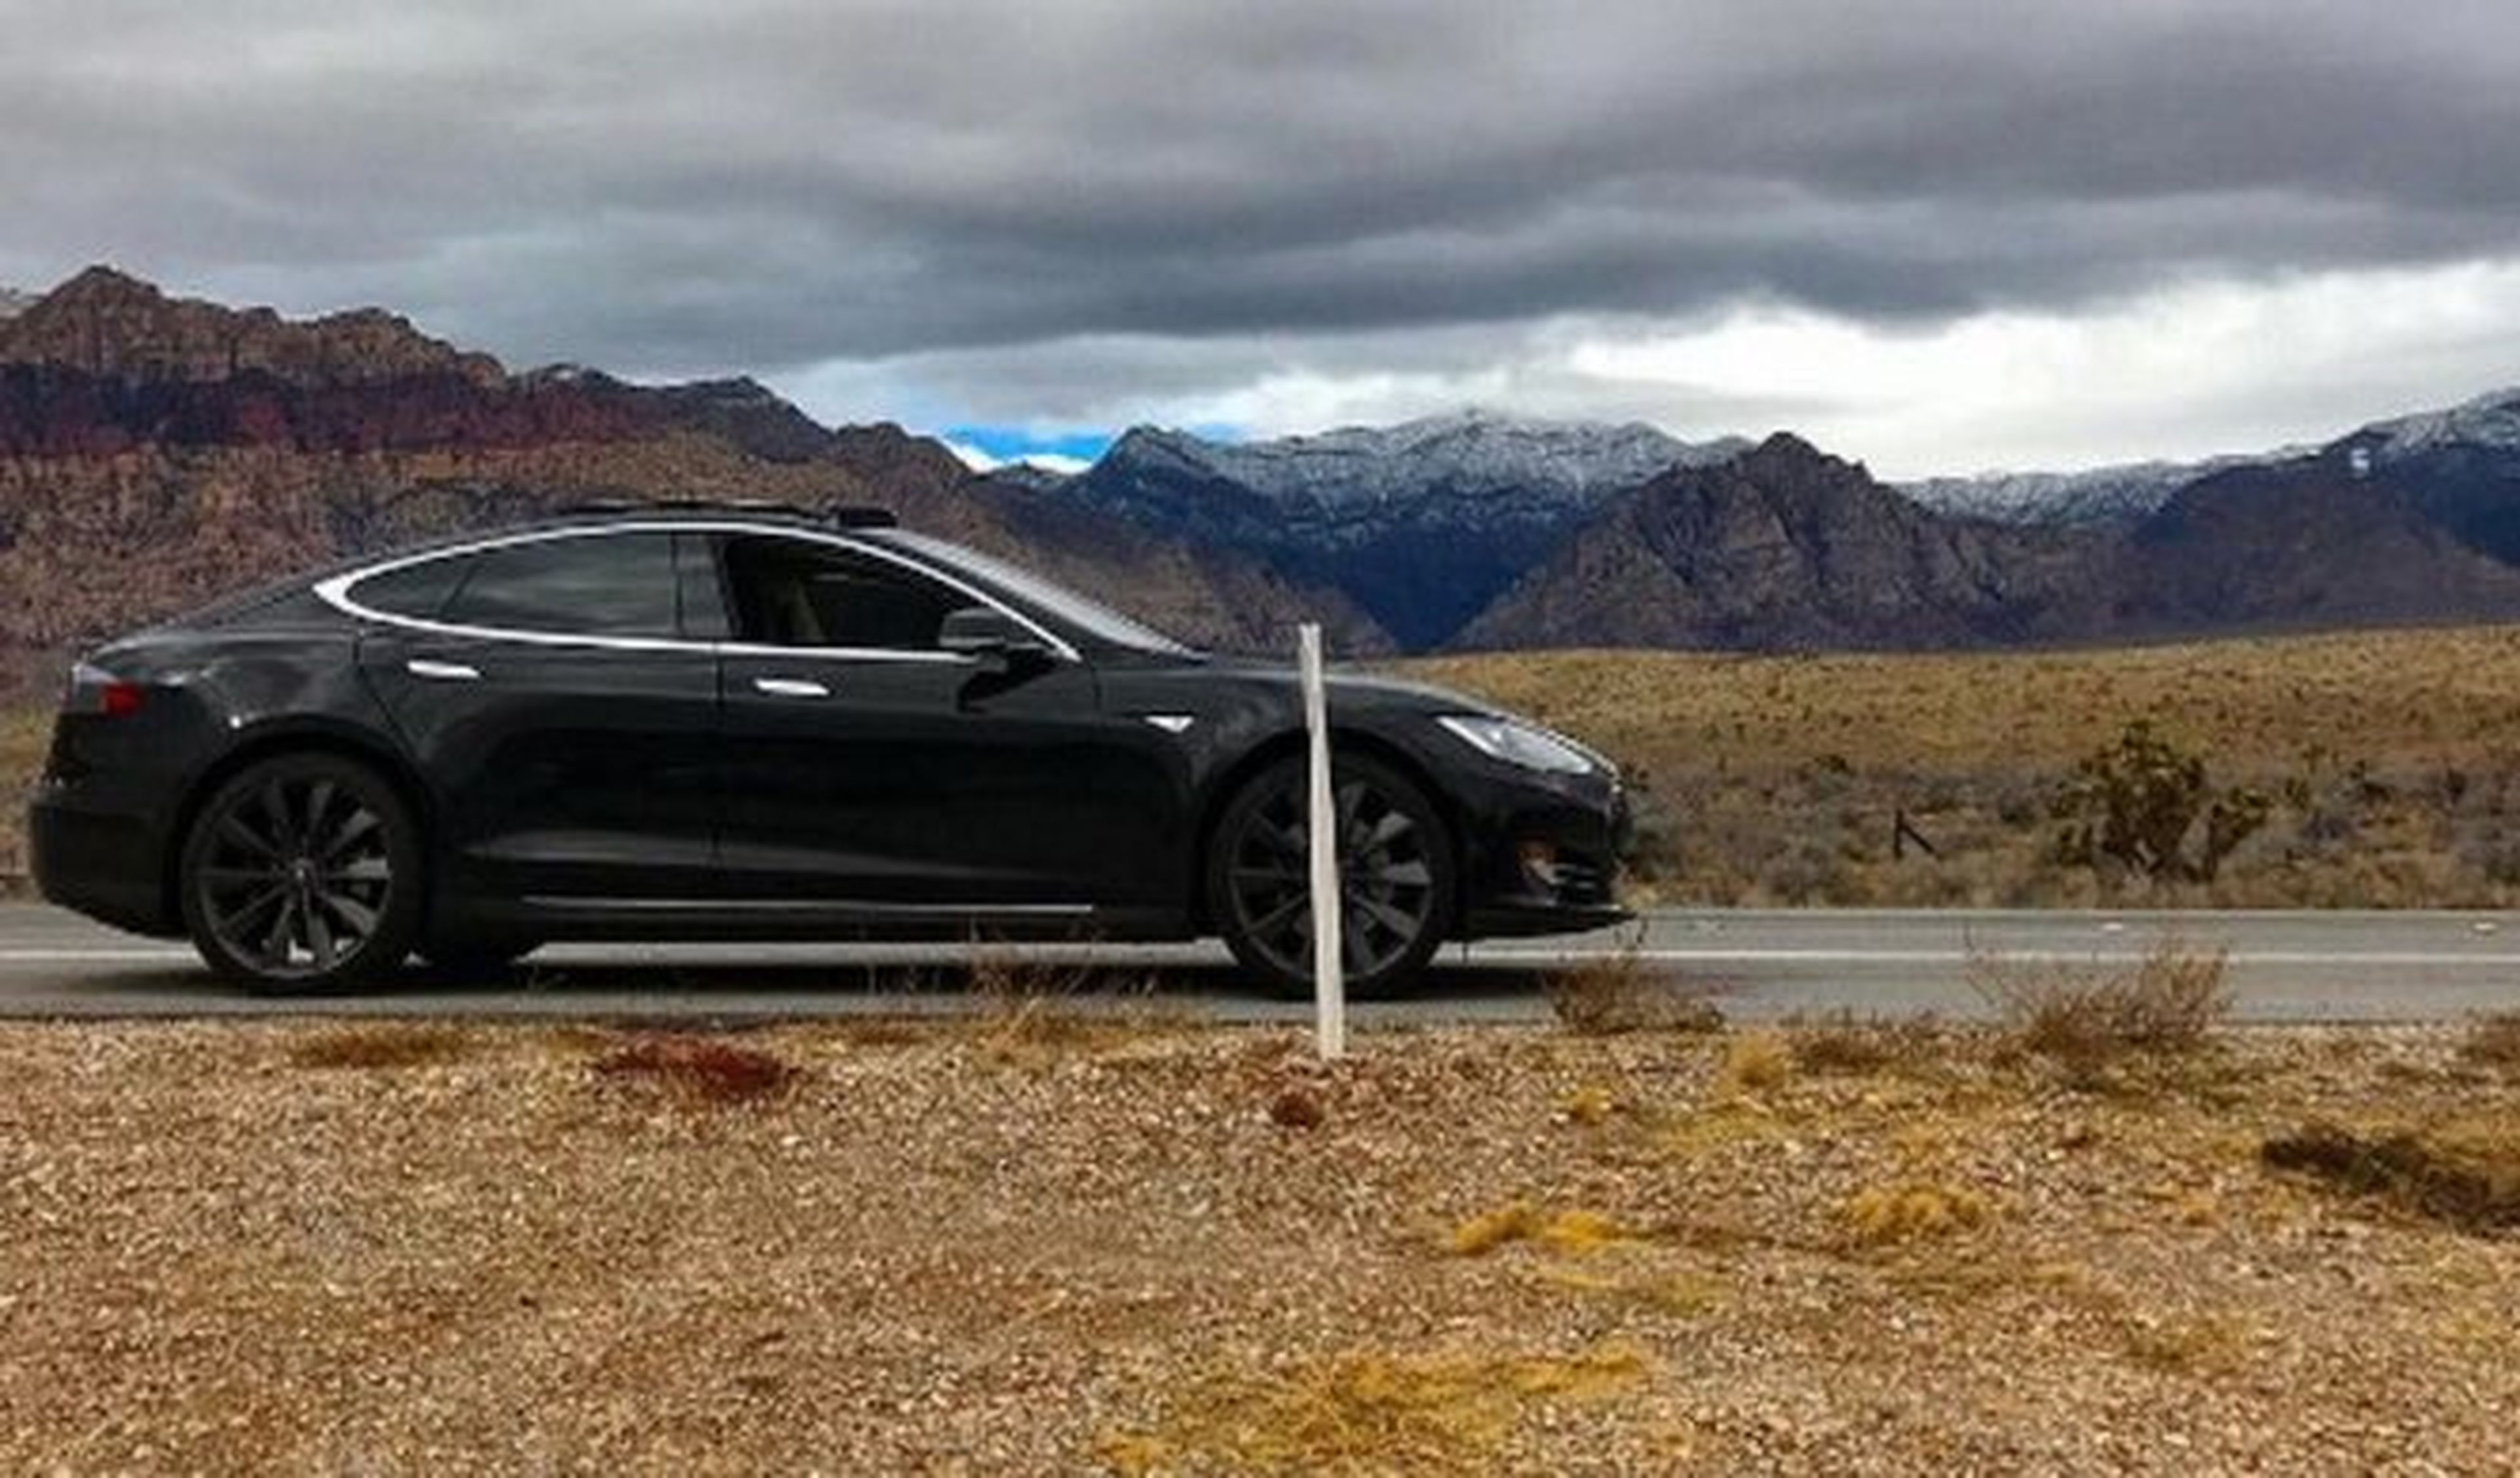 Tirados en el desierto con un Tesla Model S